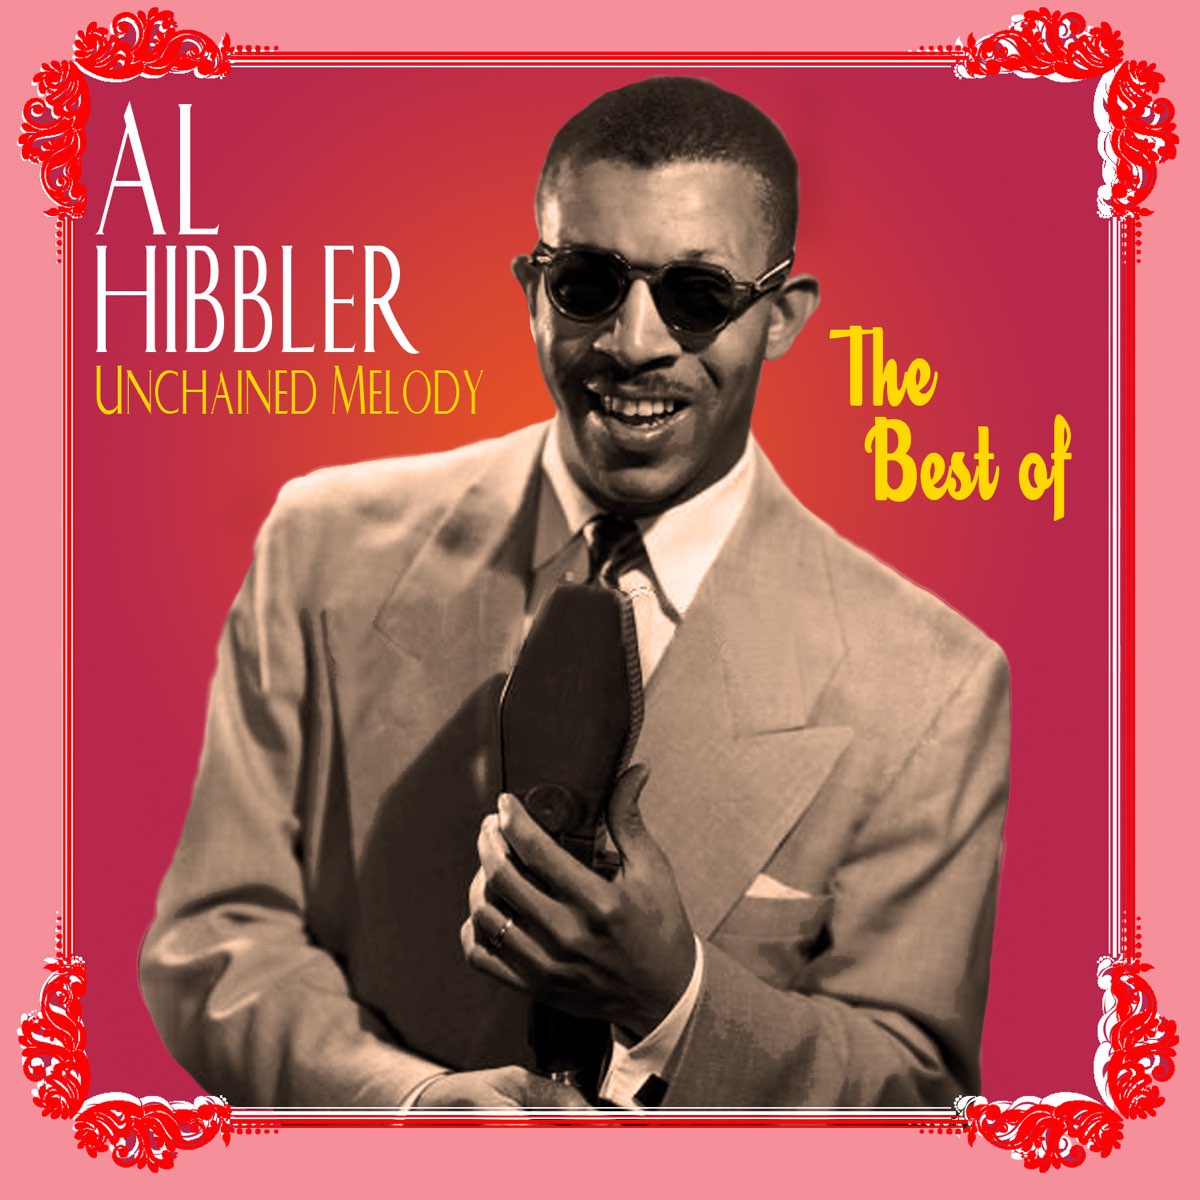 Al Hibbler. Al Hibbler Unchained Melody. Al Hibbler after the Lights go down Low. Al Hibbler в каком жанре поет.